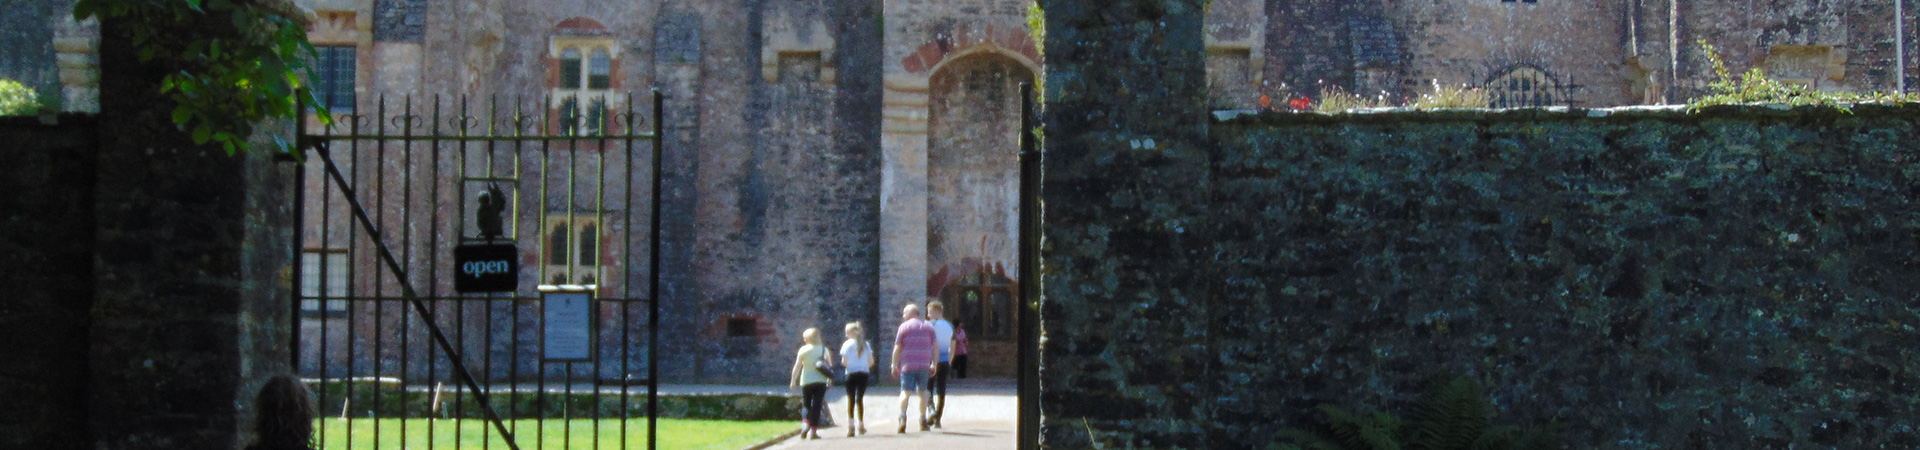 Tudor Day at Compton Castle